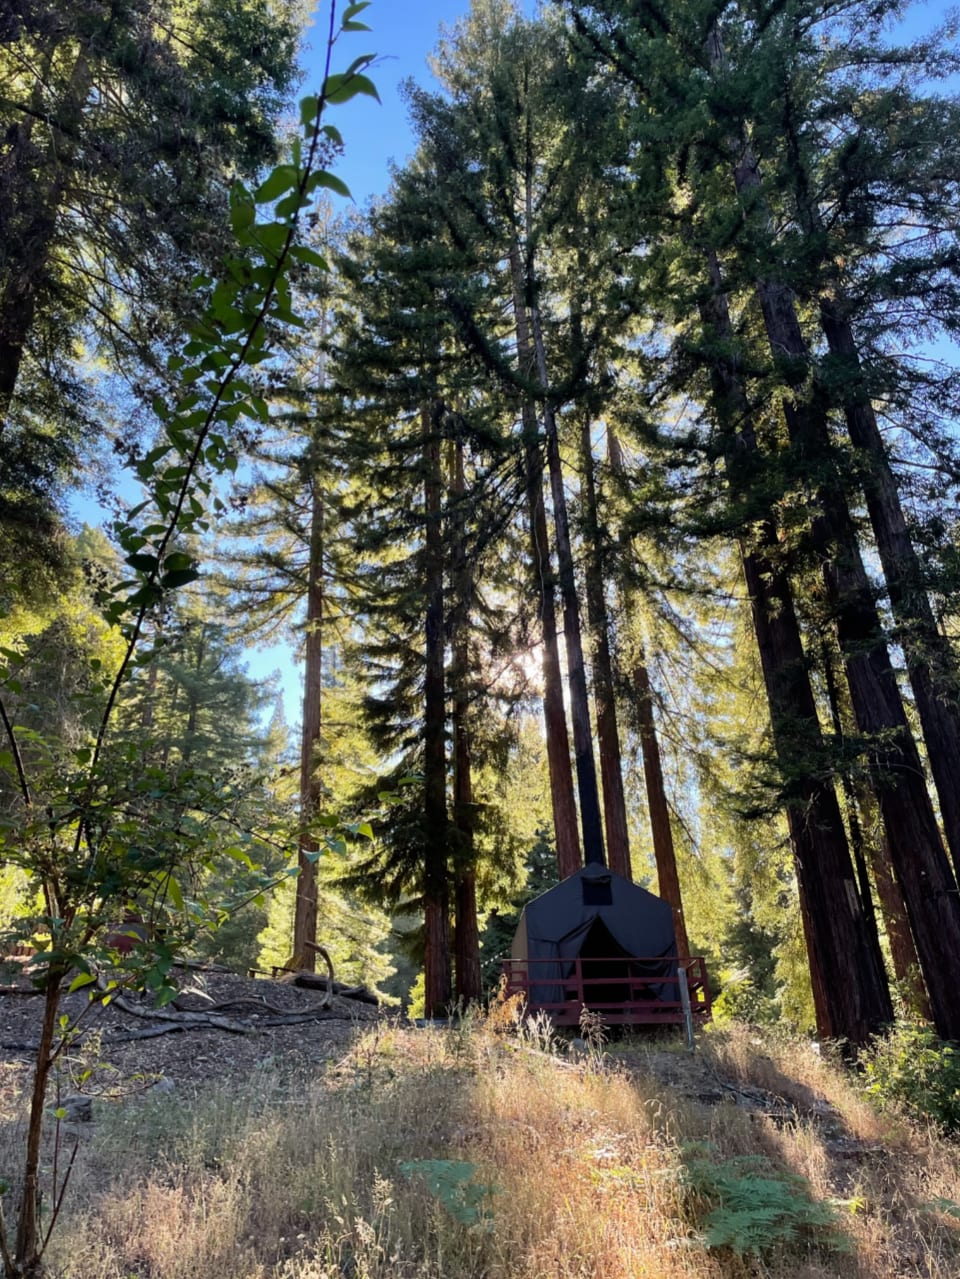 A California Dream: Camp Hoppy